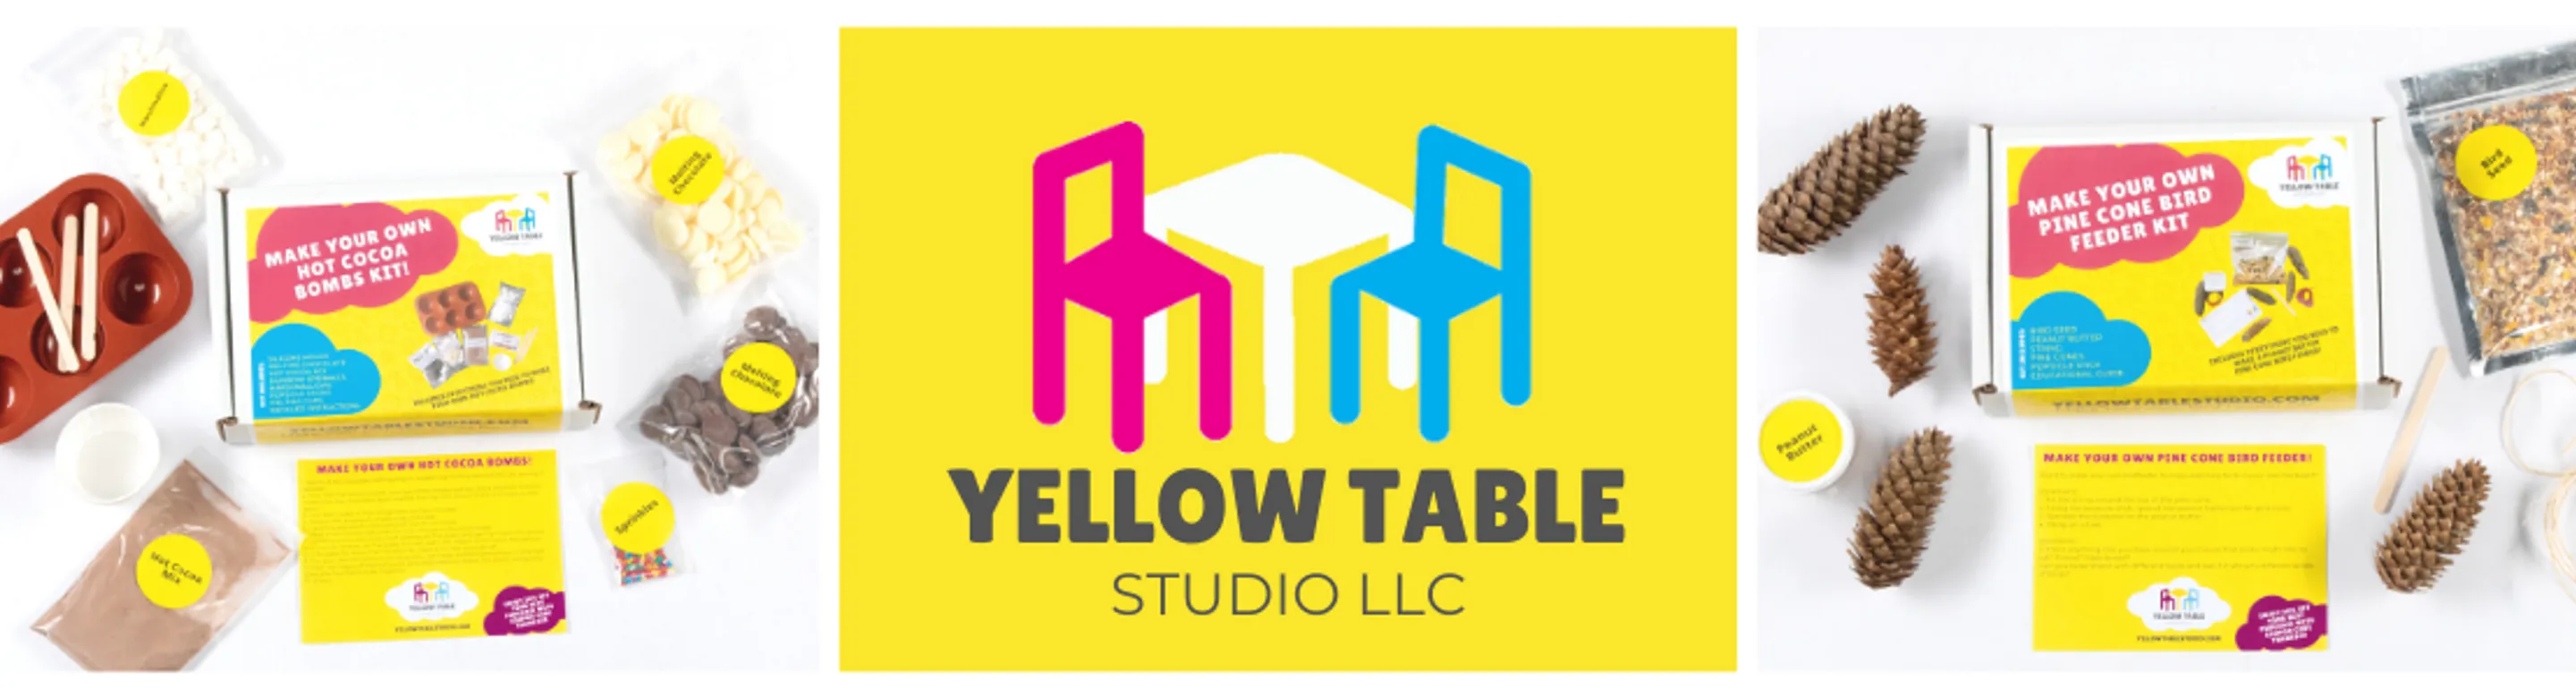 Yellow Table Studio LLC